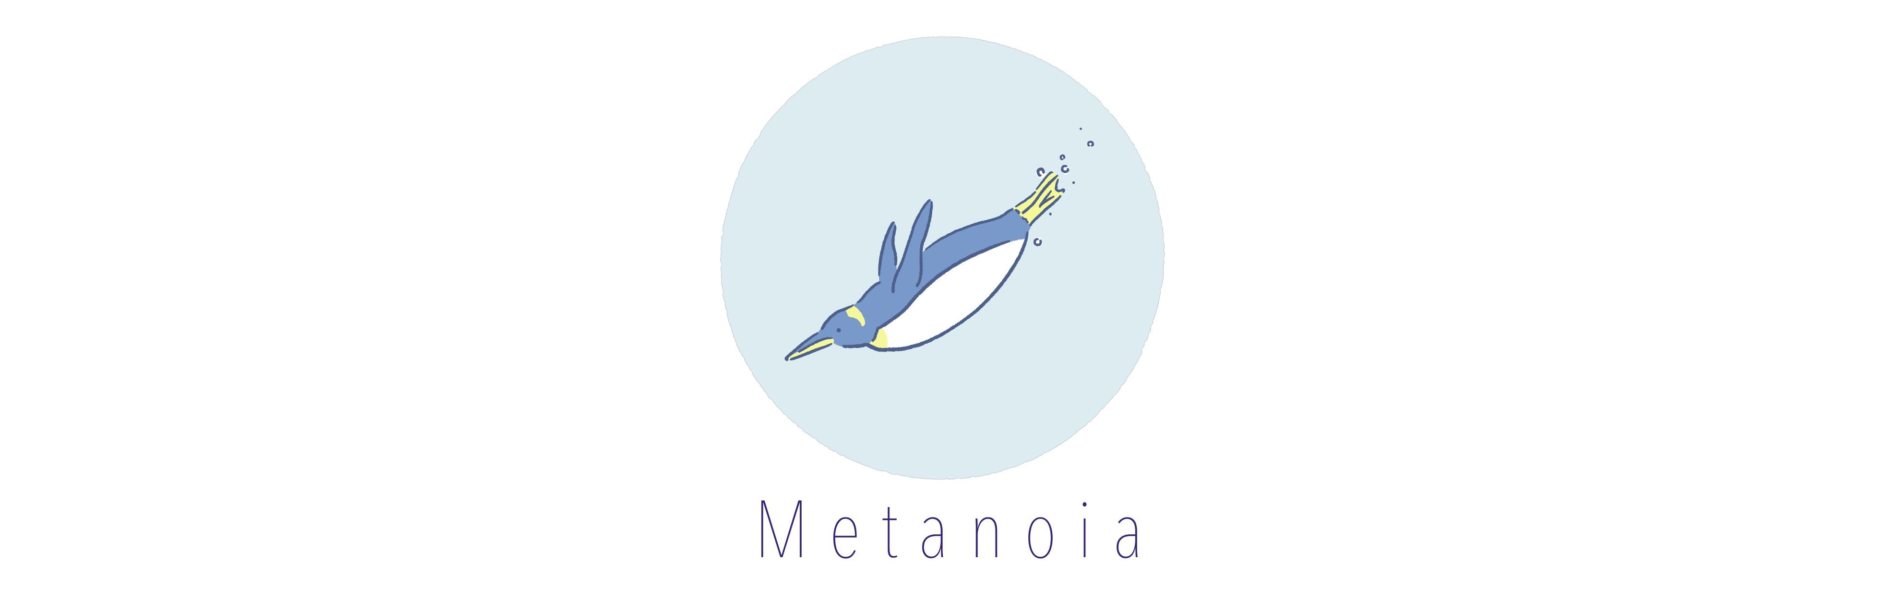 Metanoia様のイラストロゴ